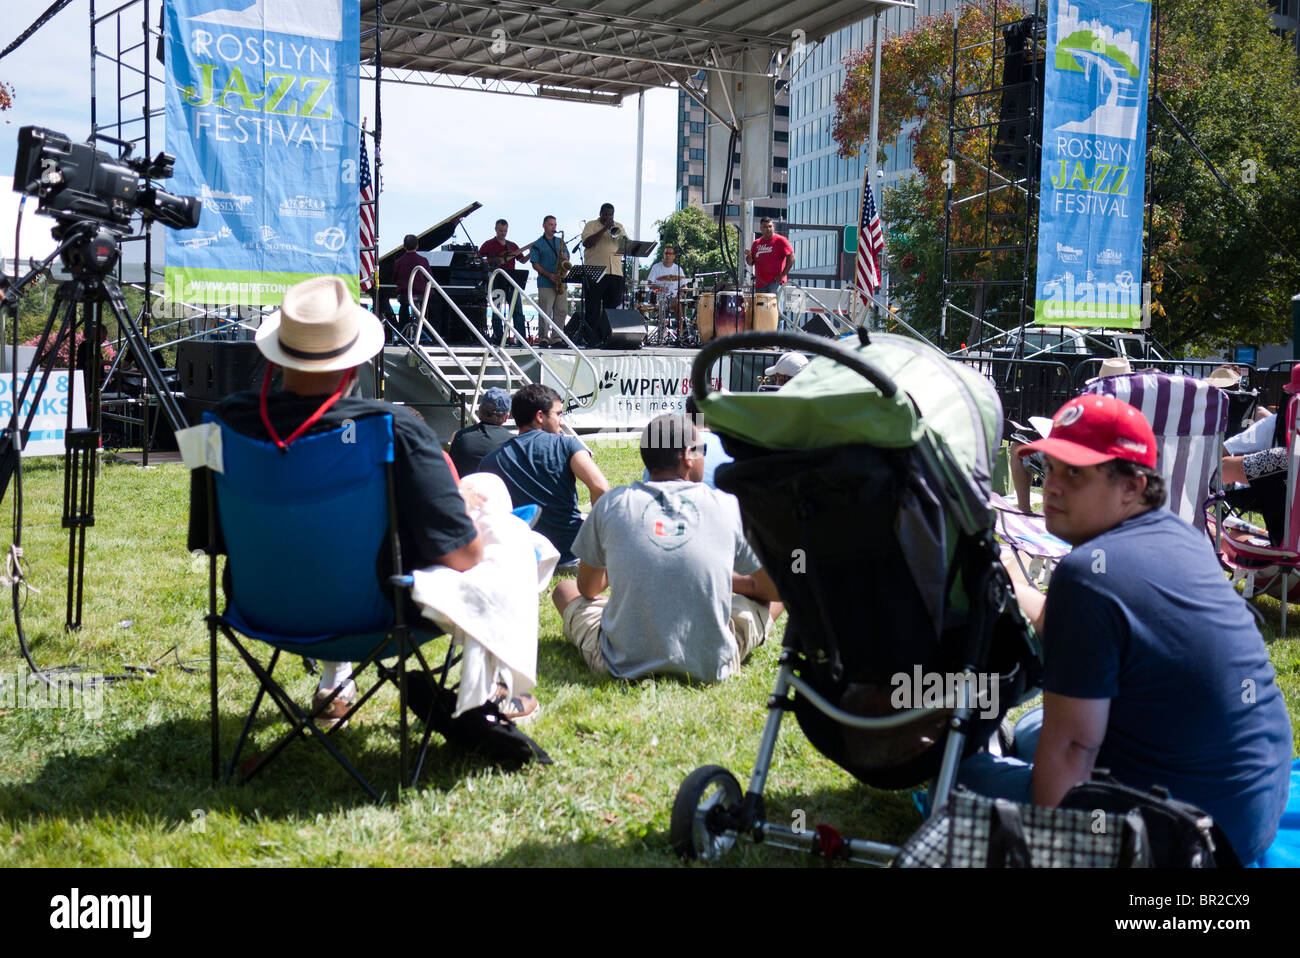 Das 20. jährlichen Rosslyn Jazz Festival (2010) in Rosslyn, einem Viertel von Arlington County in der Nähe von Georgetown und der Innenstadt von Washington DC. Stockfoto